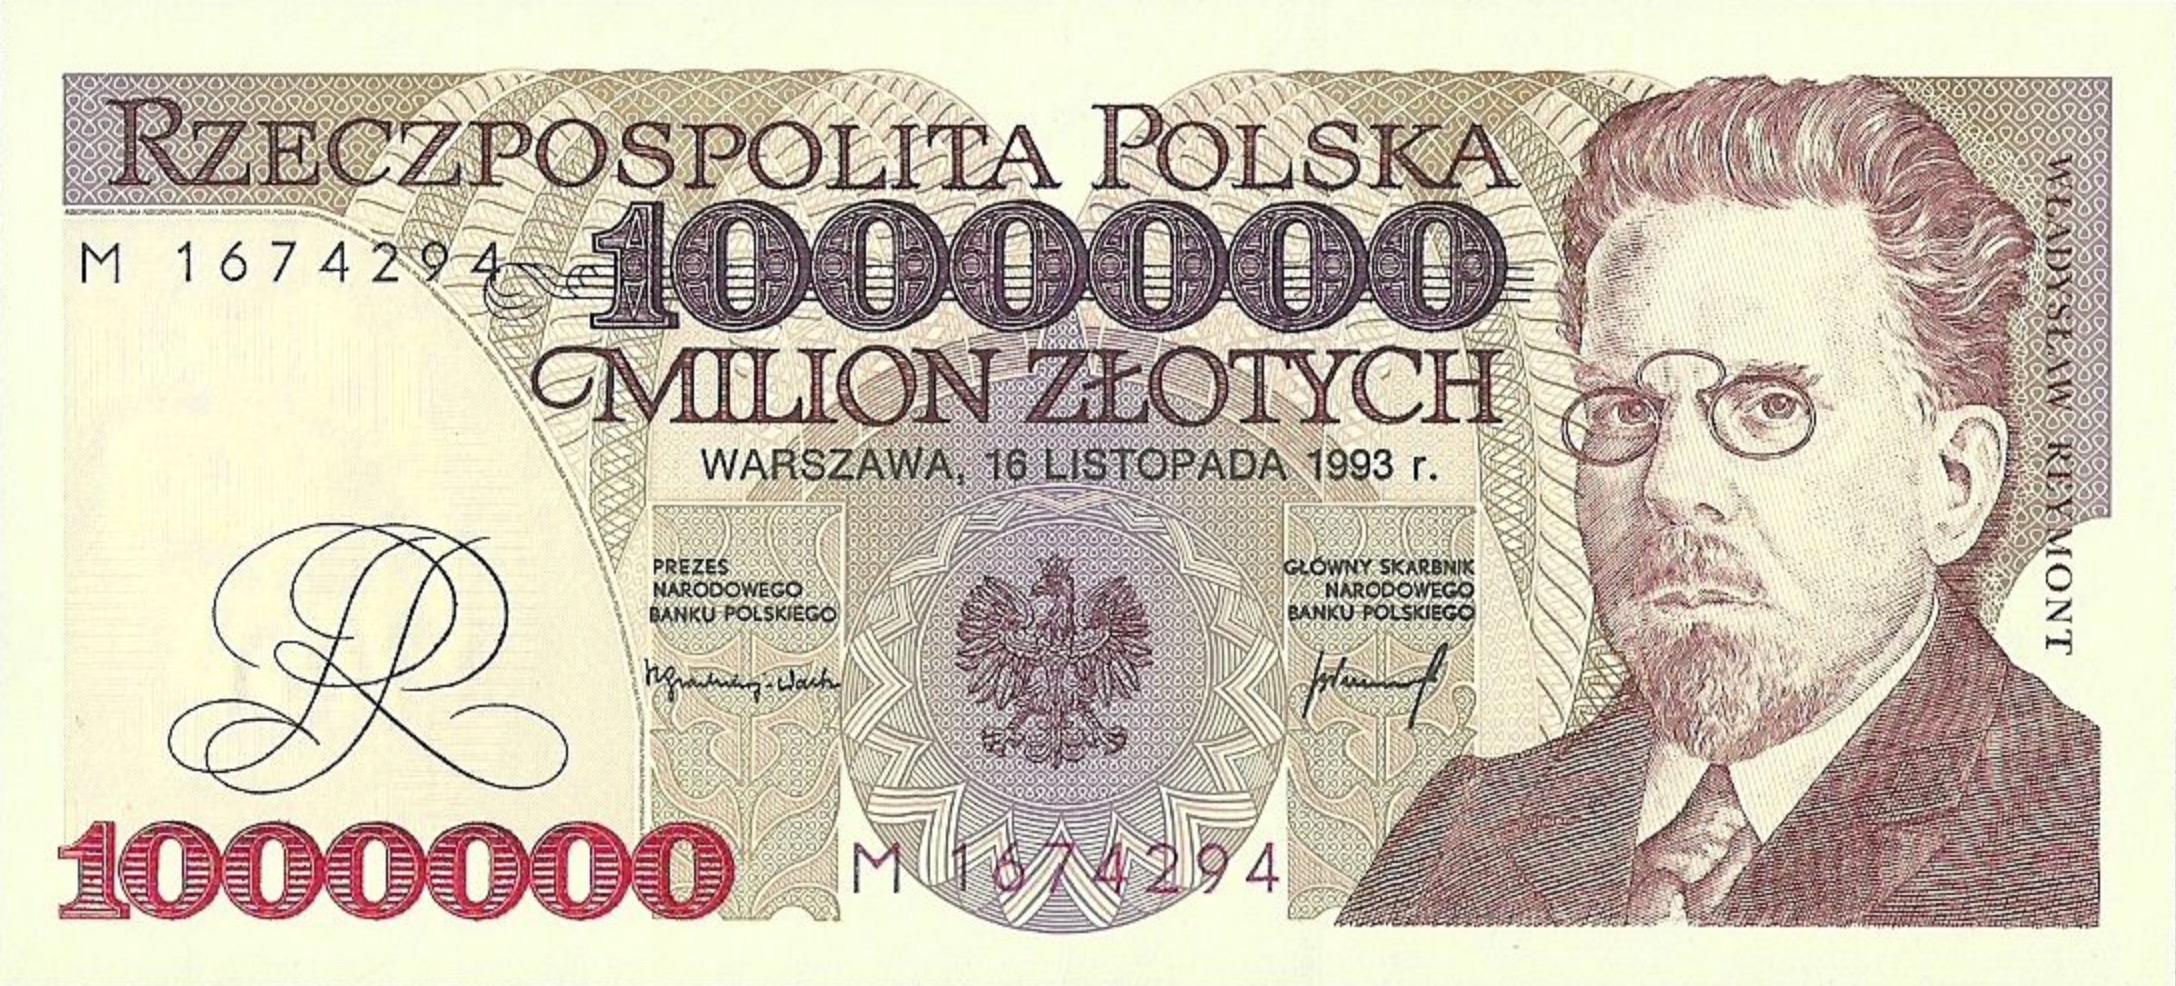 1000000 old Polish Zloty banknote Władysław Reymont - Exchange yours